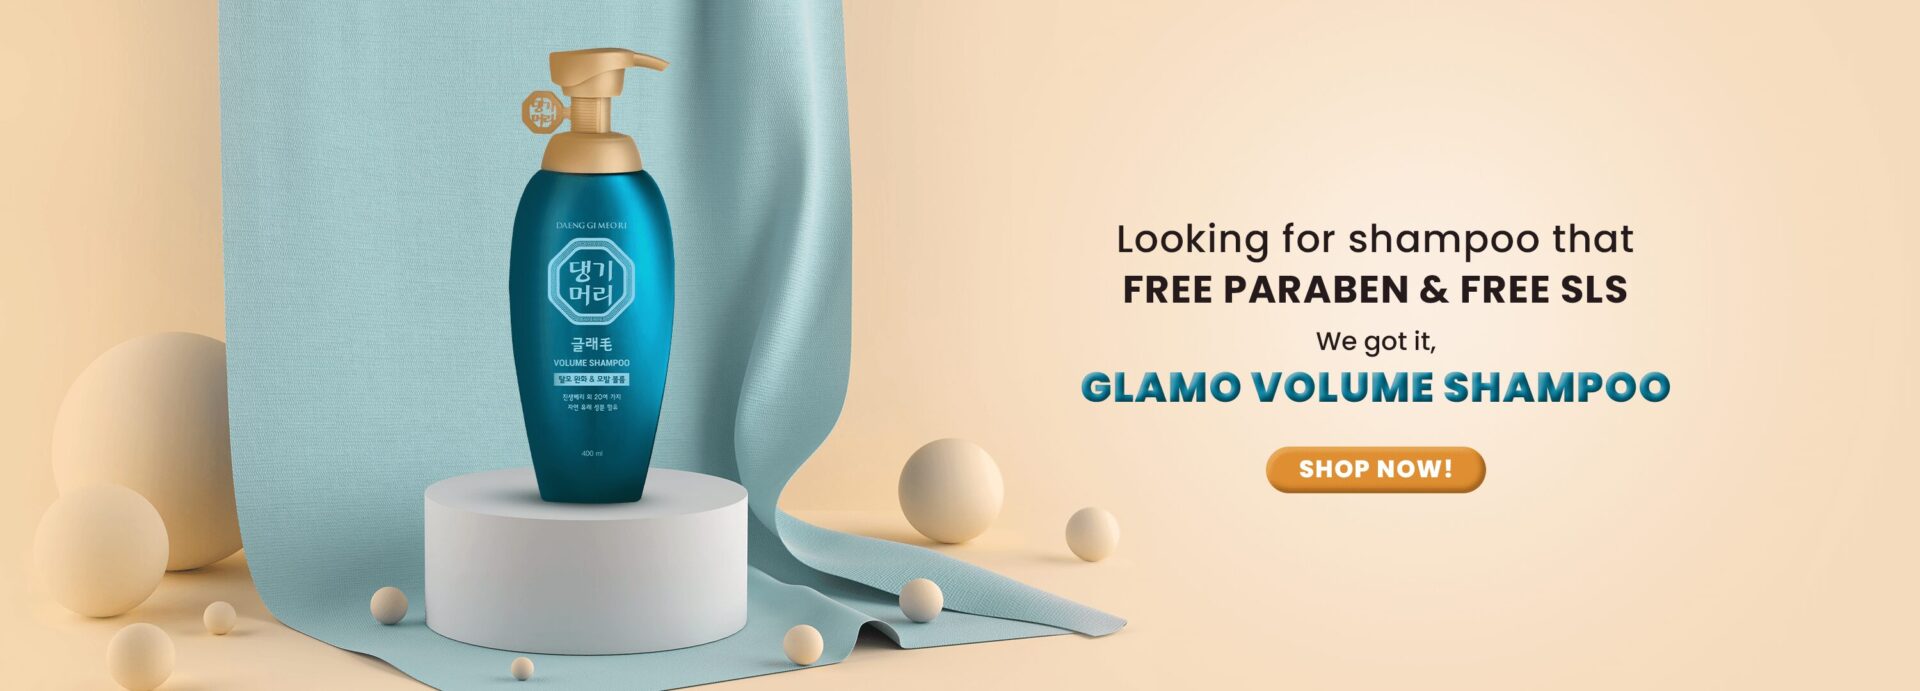 Web-Banner_Glamo-Volume-Shampoo_Final